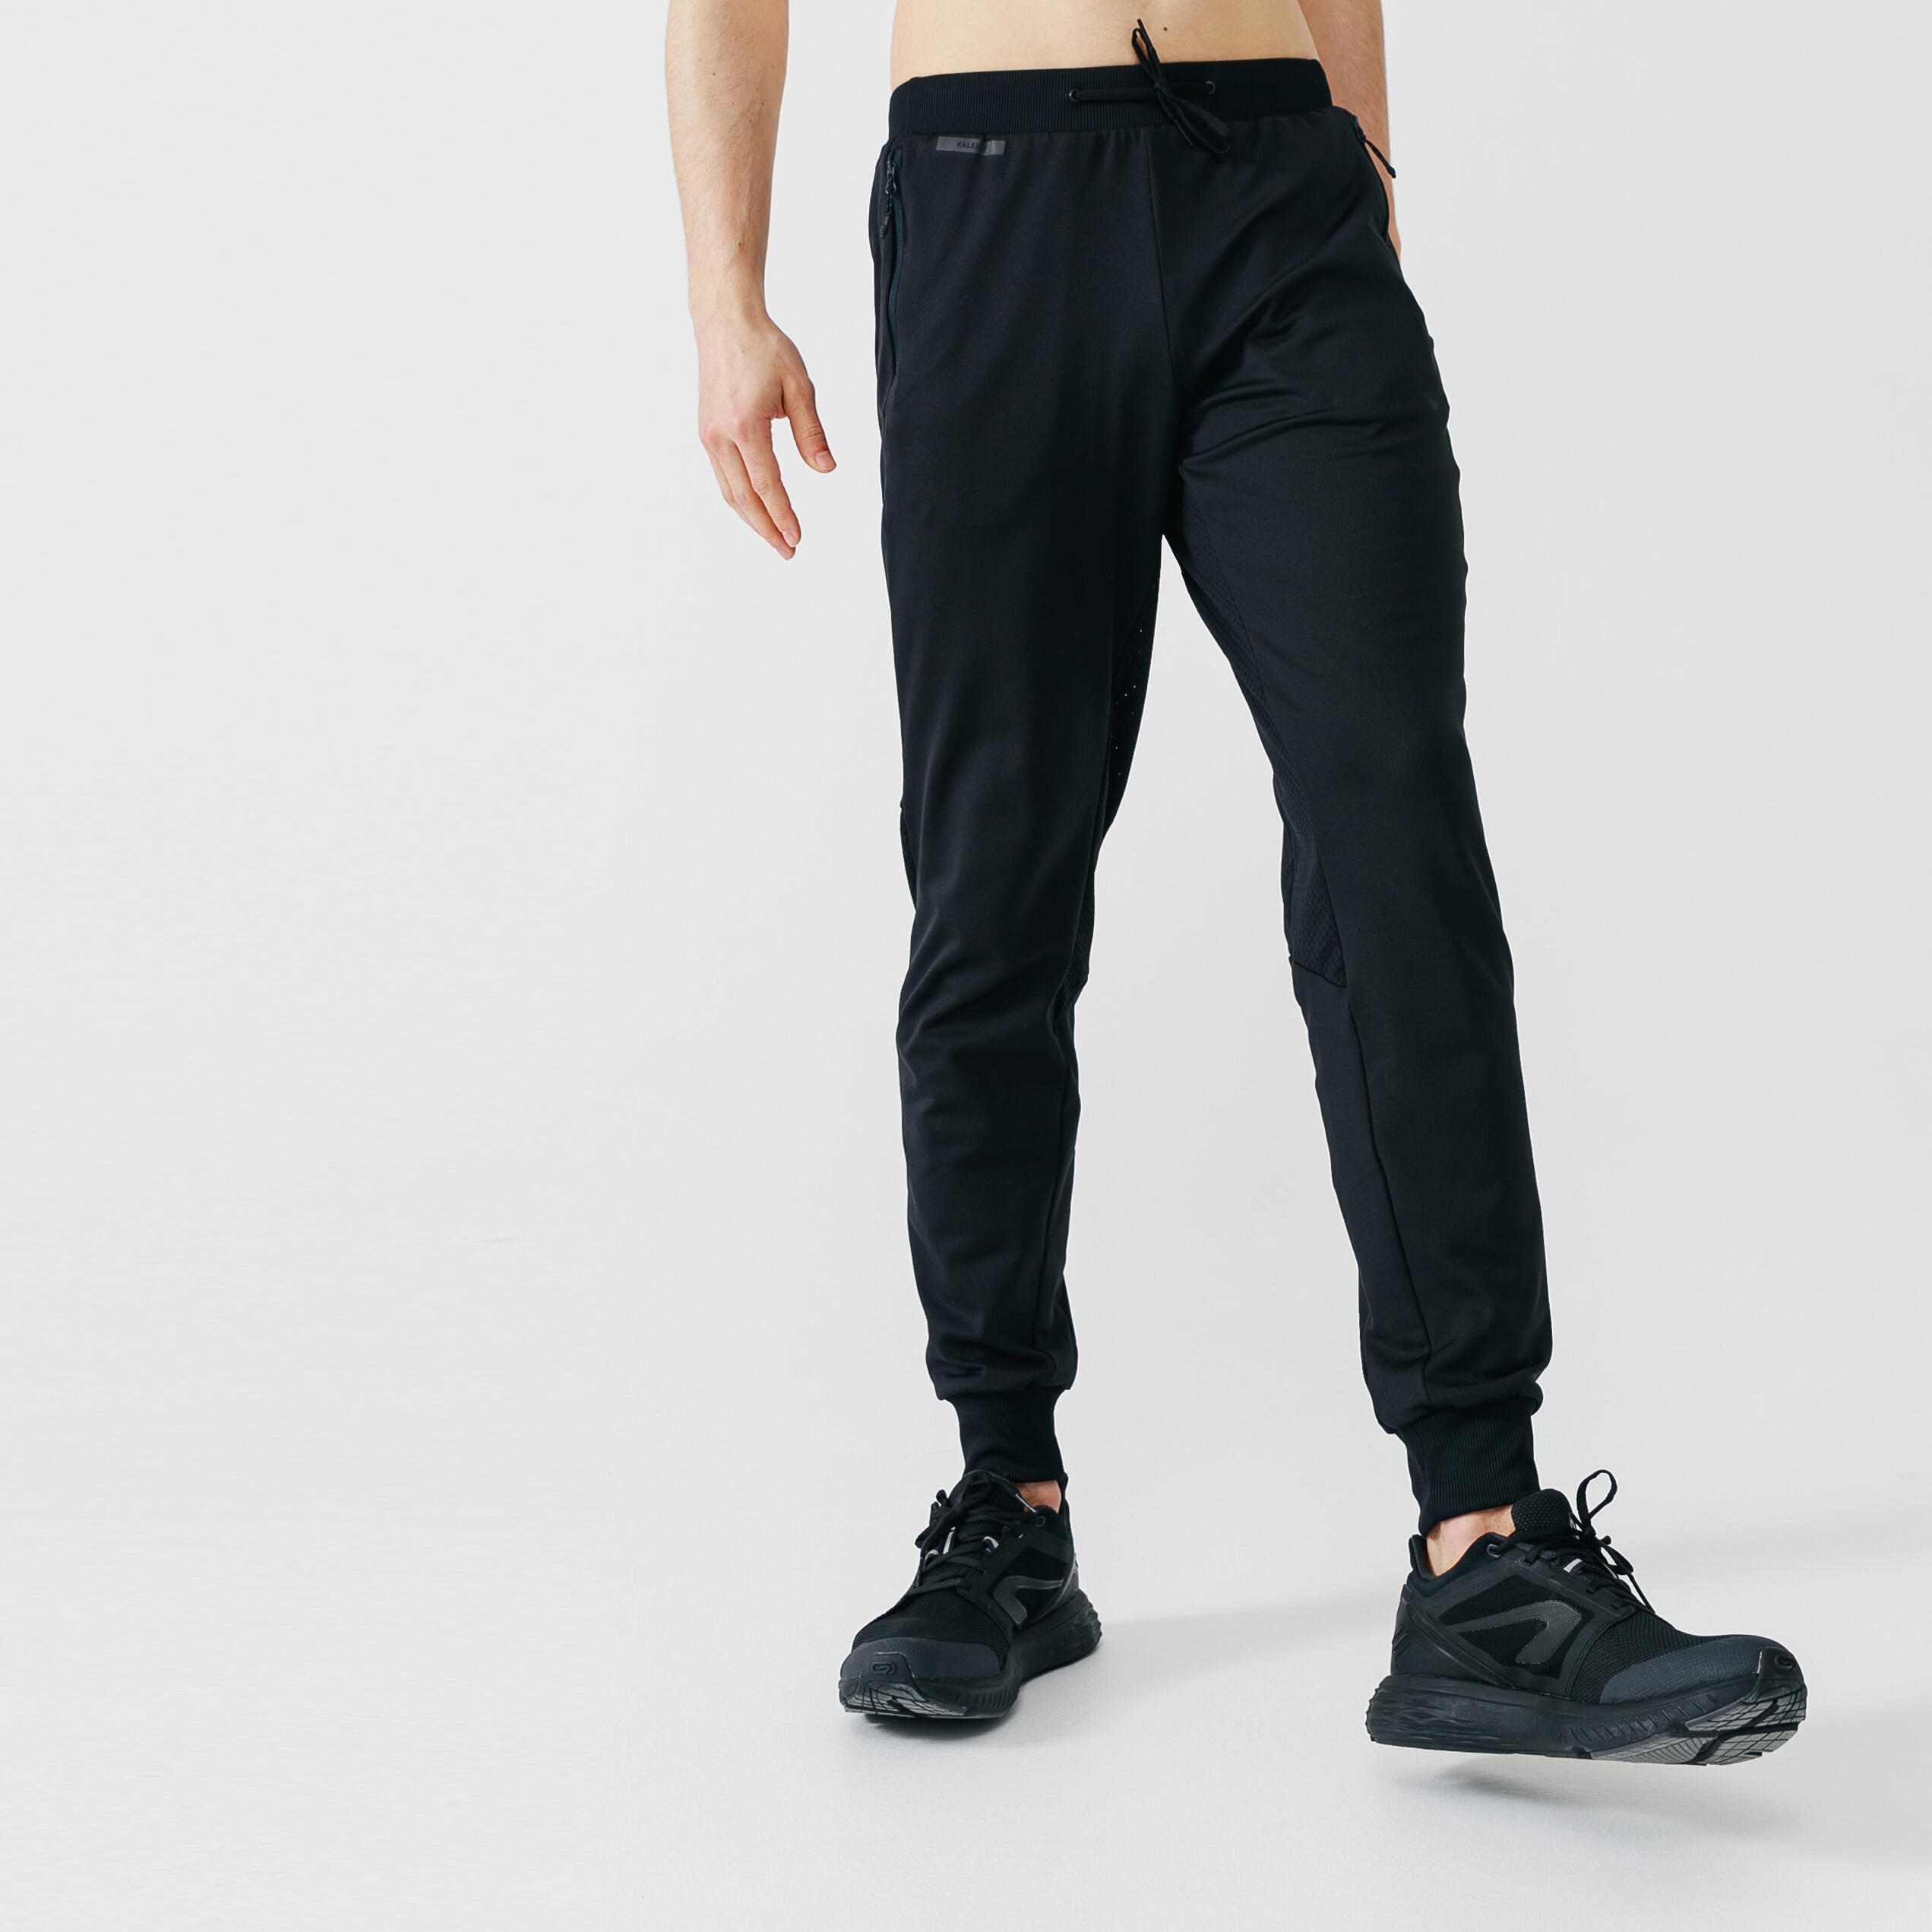 Taille M-3XL Taille élastique acelyn Pantalon de Jogging pour Homme Coupe Droite